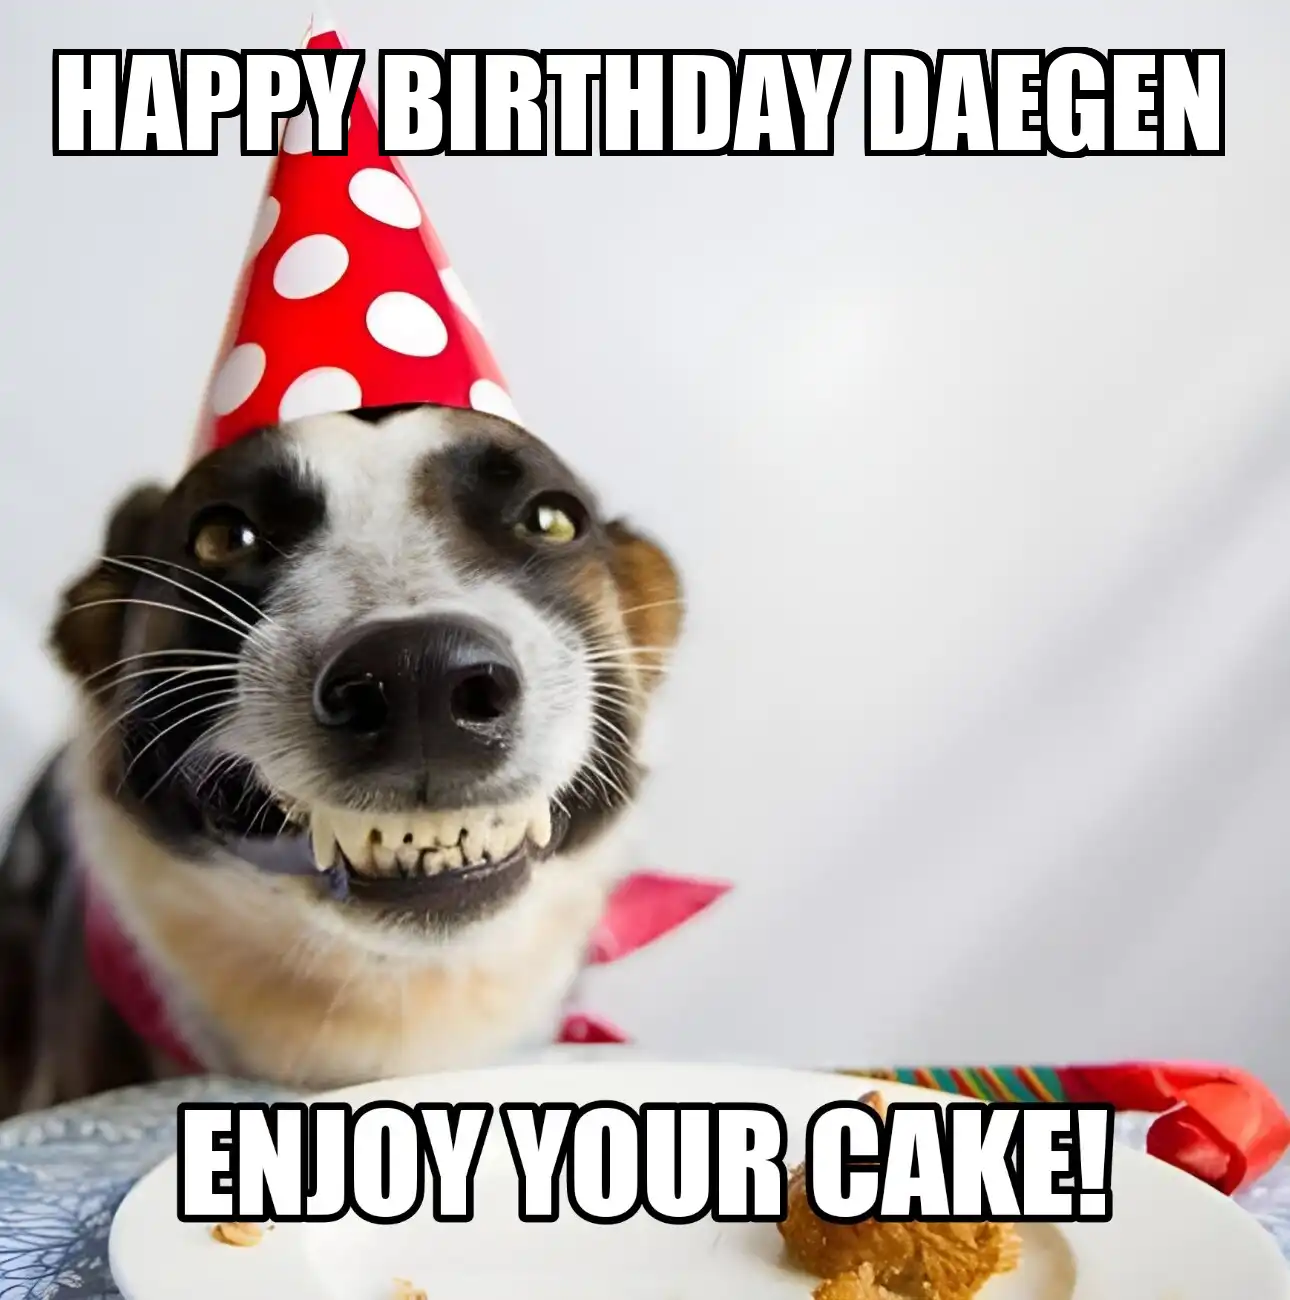 Happy Birthday Daegen Enjoy Your Cake Dog Meme